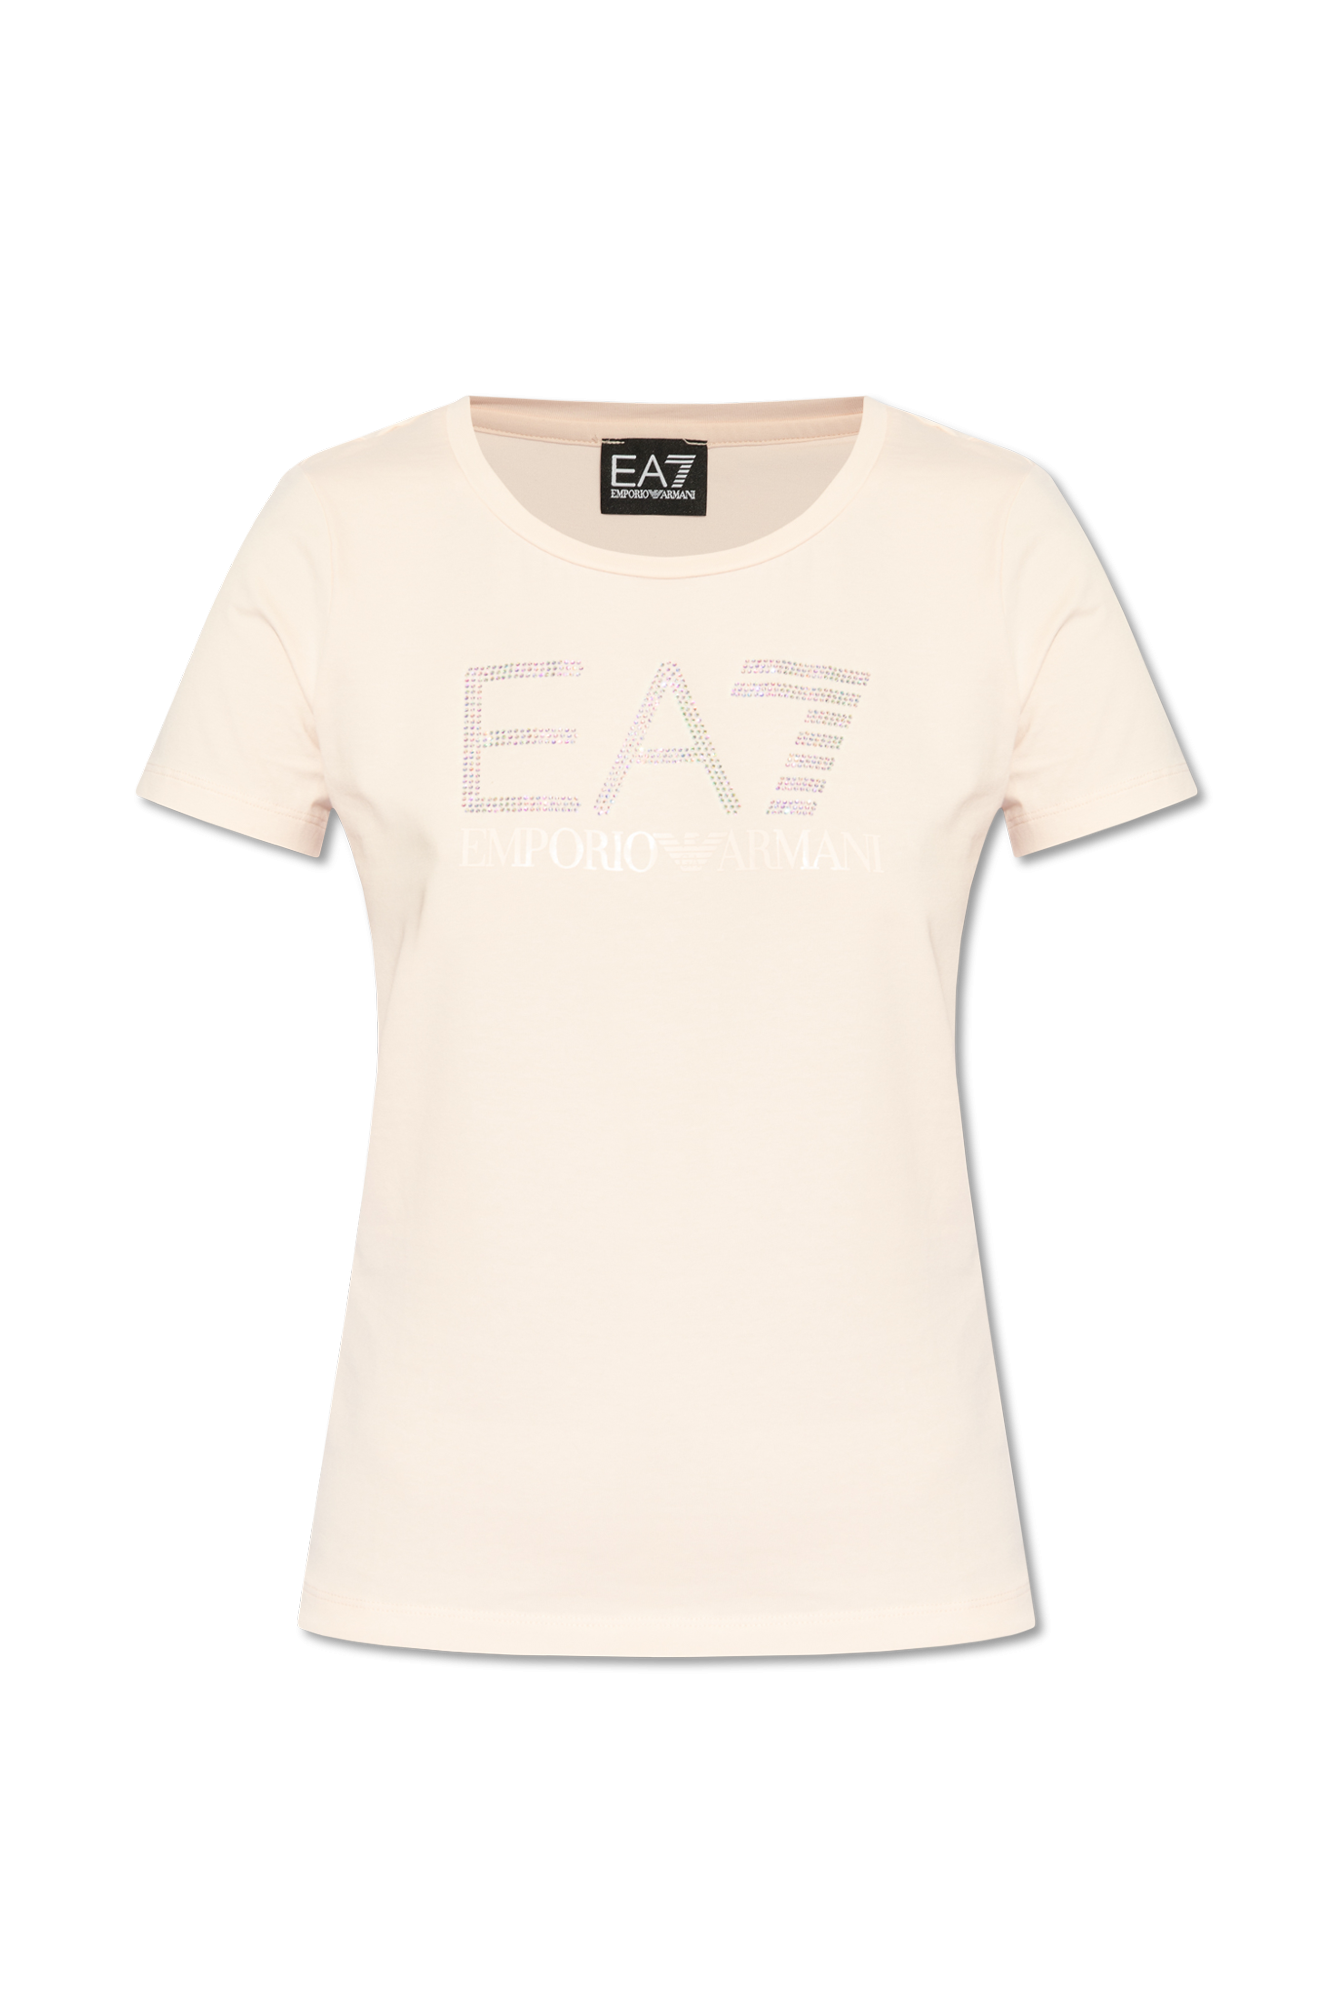 Pink T-shirt with logo EA7 Emporio Armani - Vitkac Australia